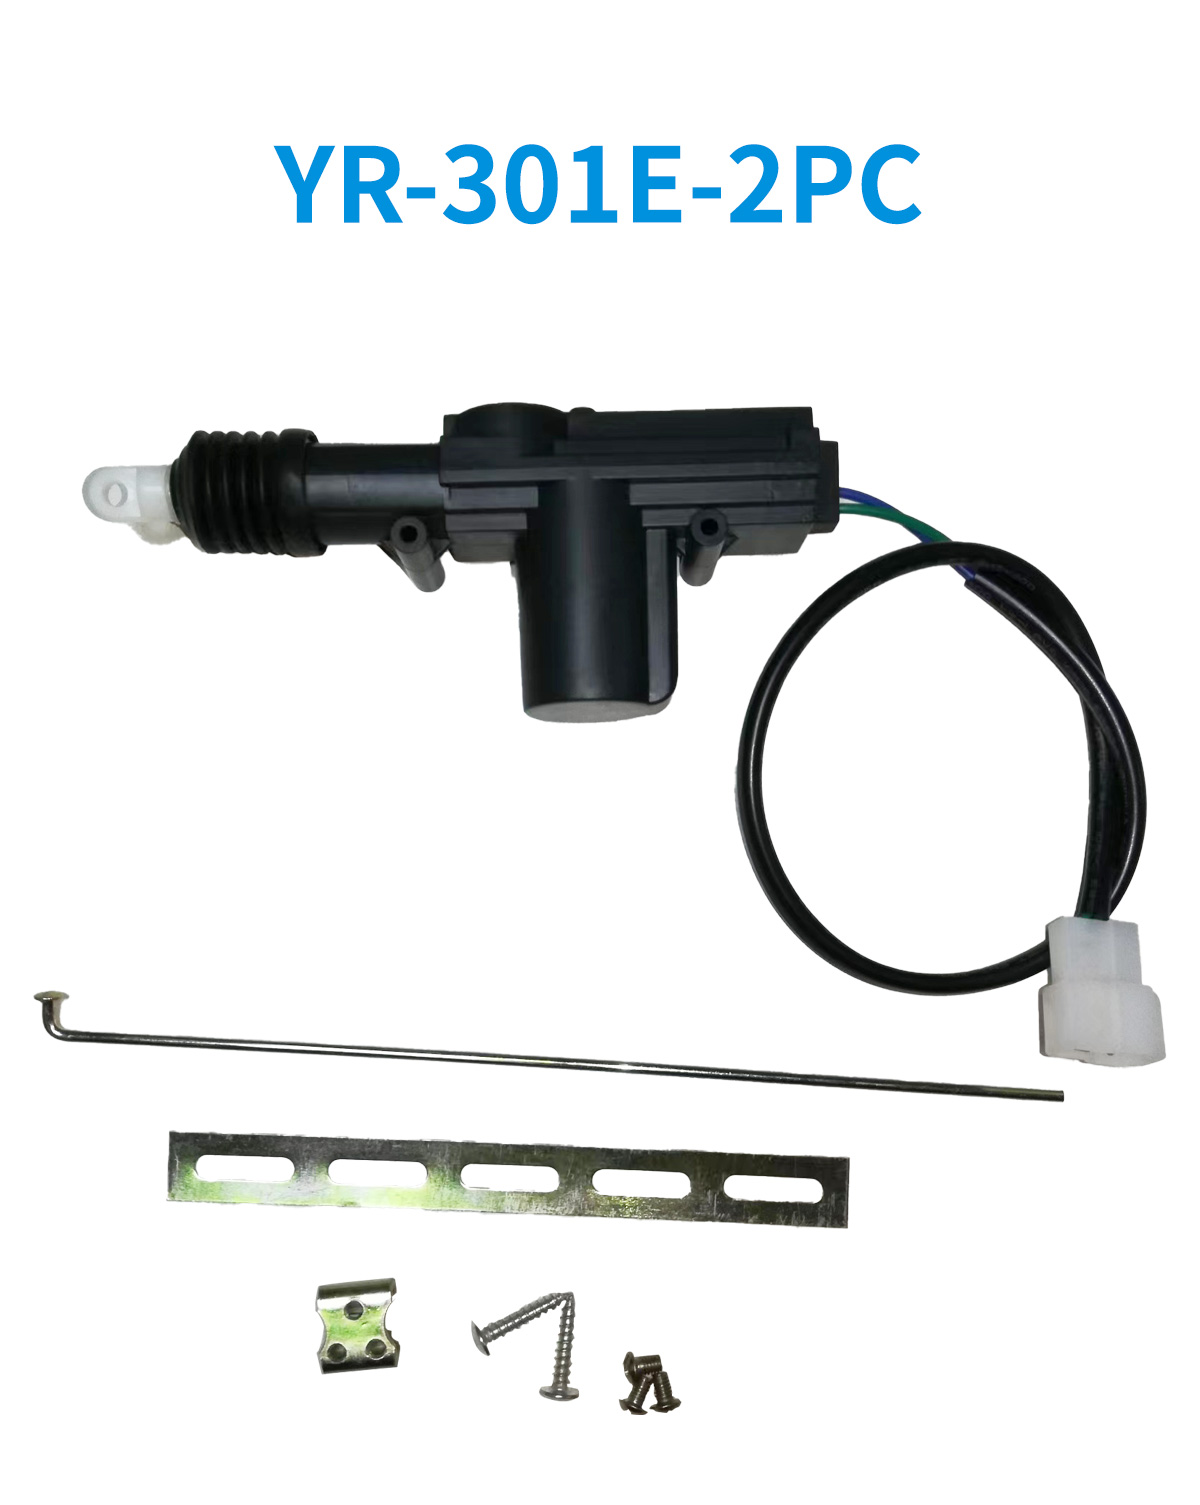 YR-301E-2PC